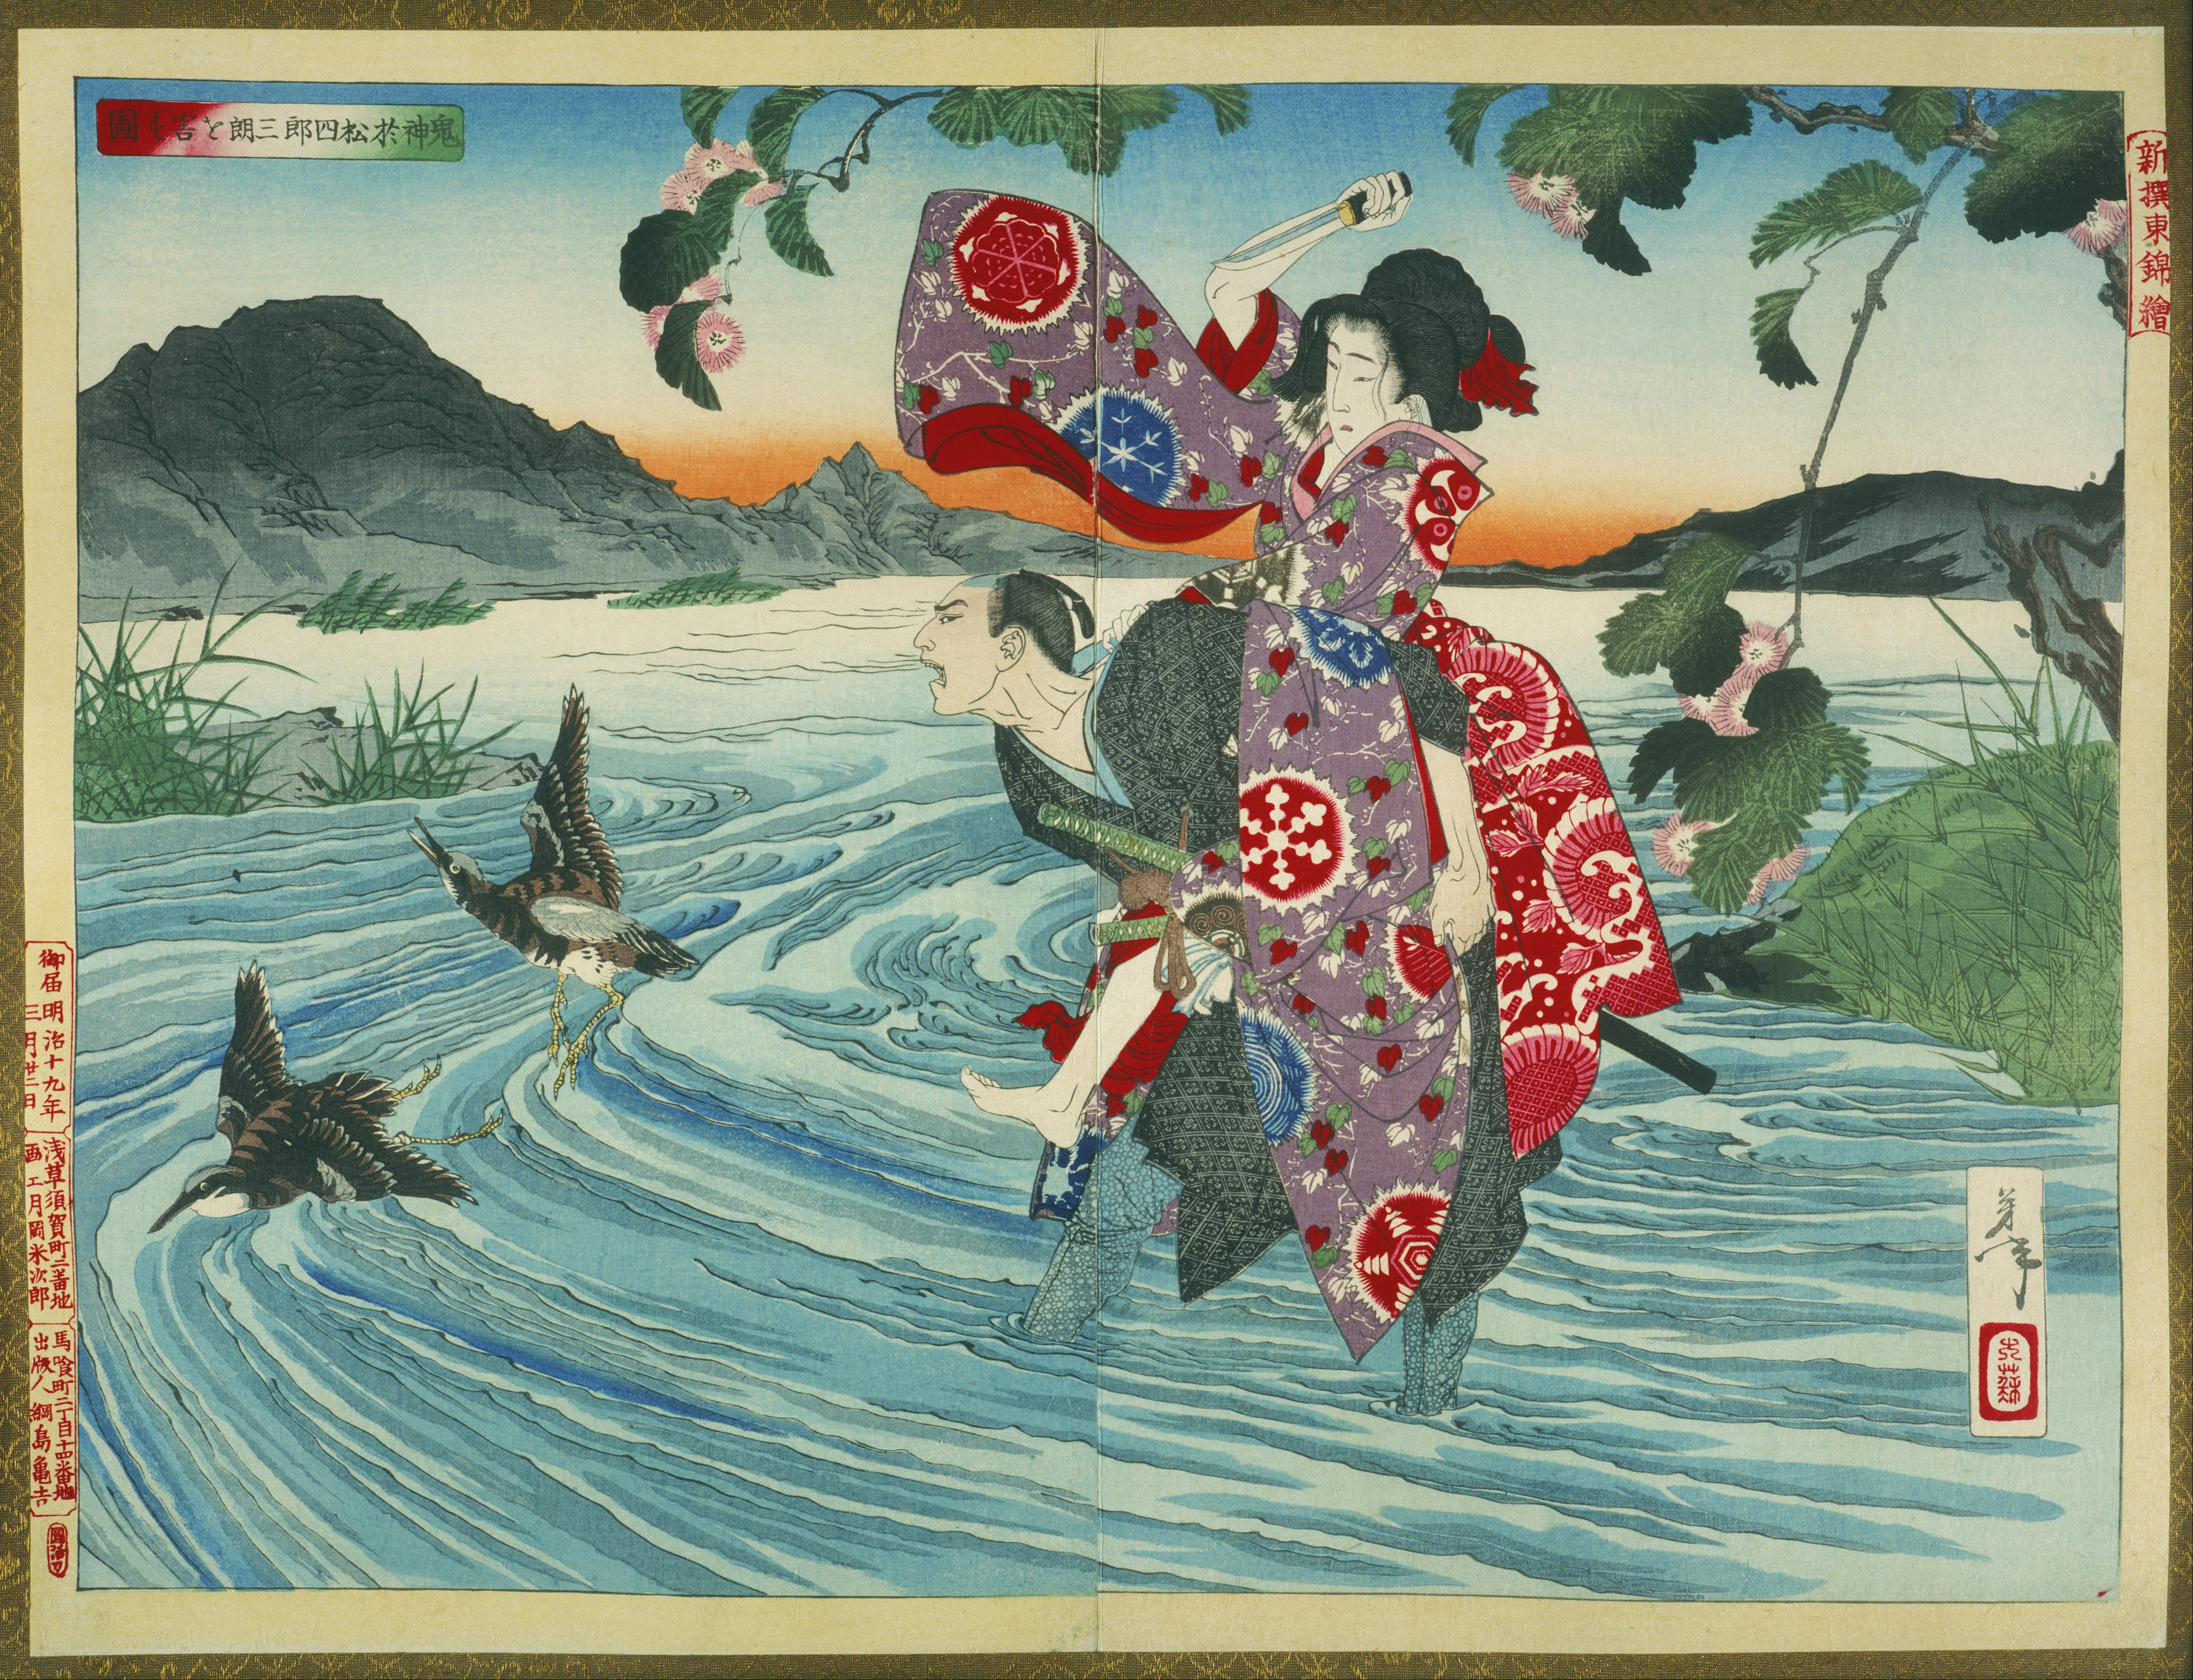 الشيطان أوماتسو يقتل شيروسابورو في النهر by Tsukioka Yoshitoshi - 1885 - 39.39 x 53.39 سم 